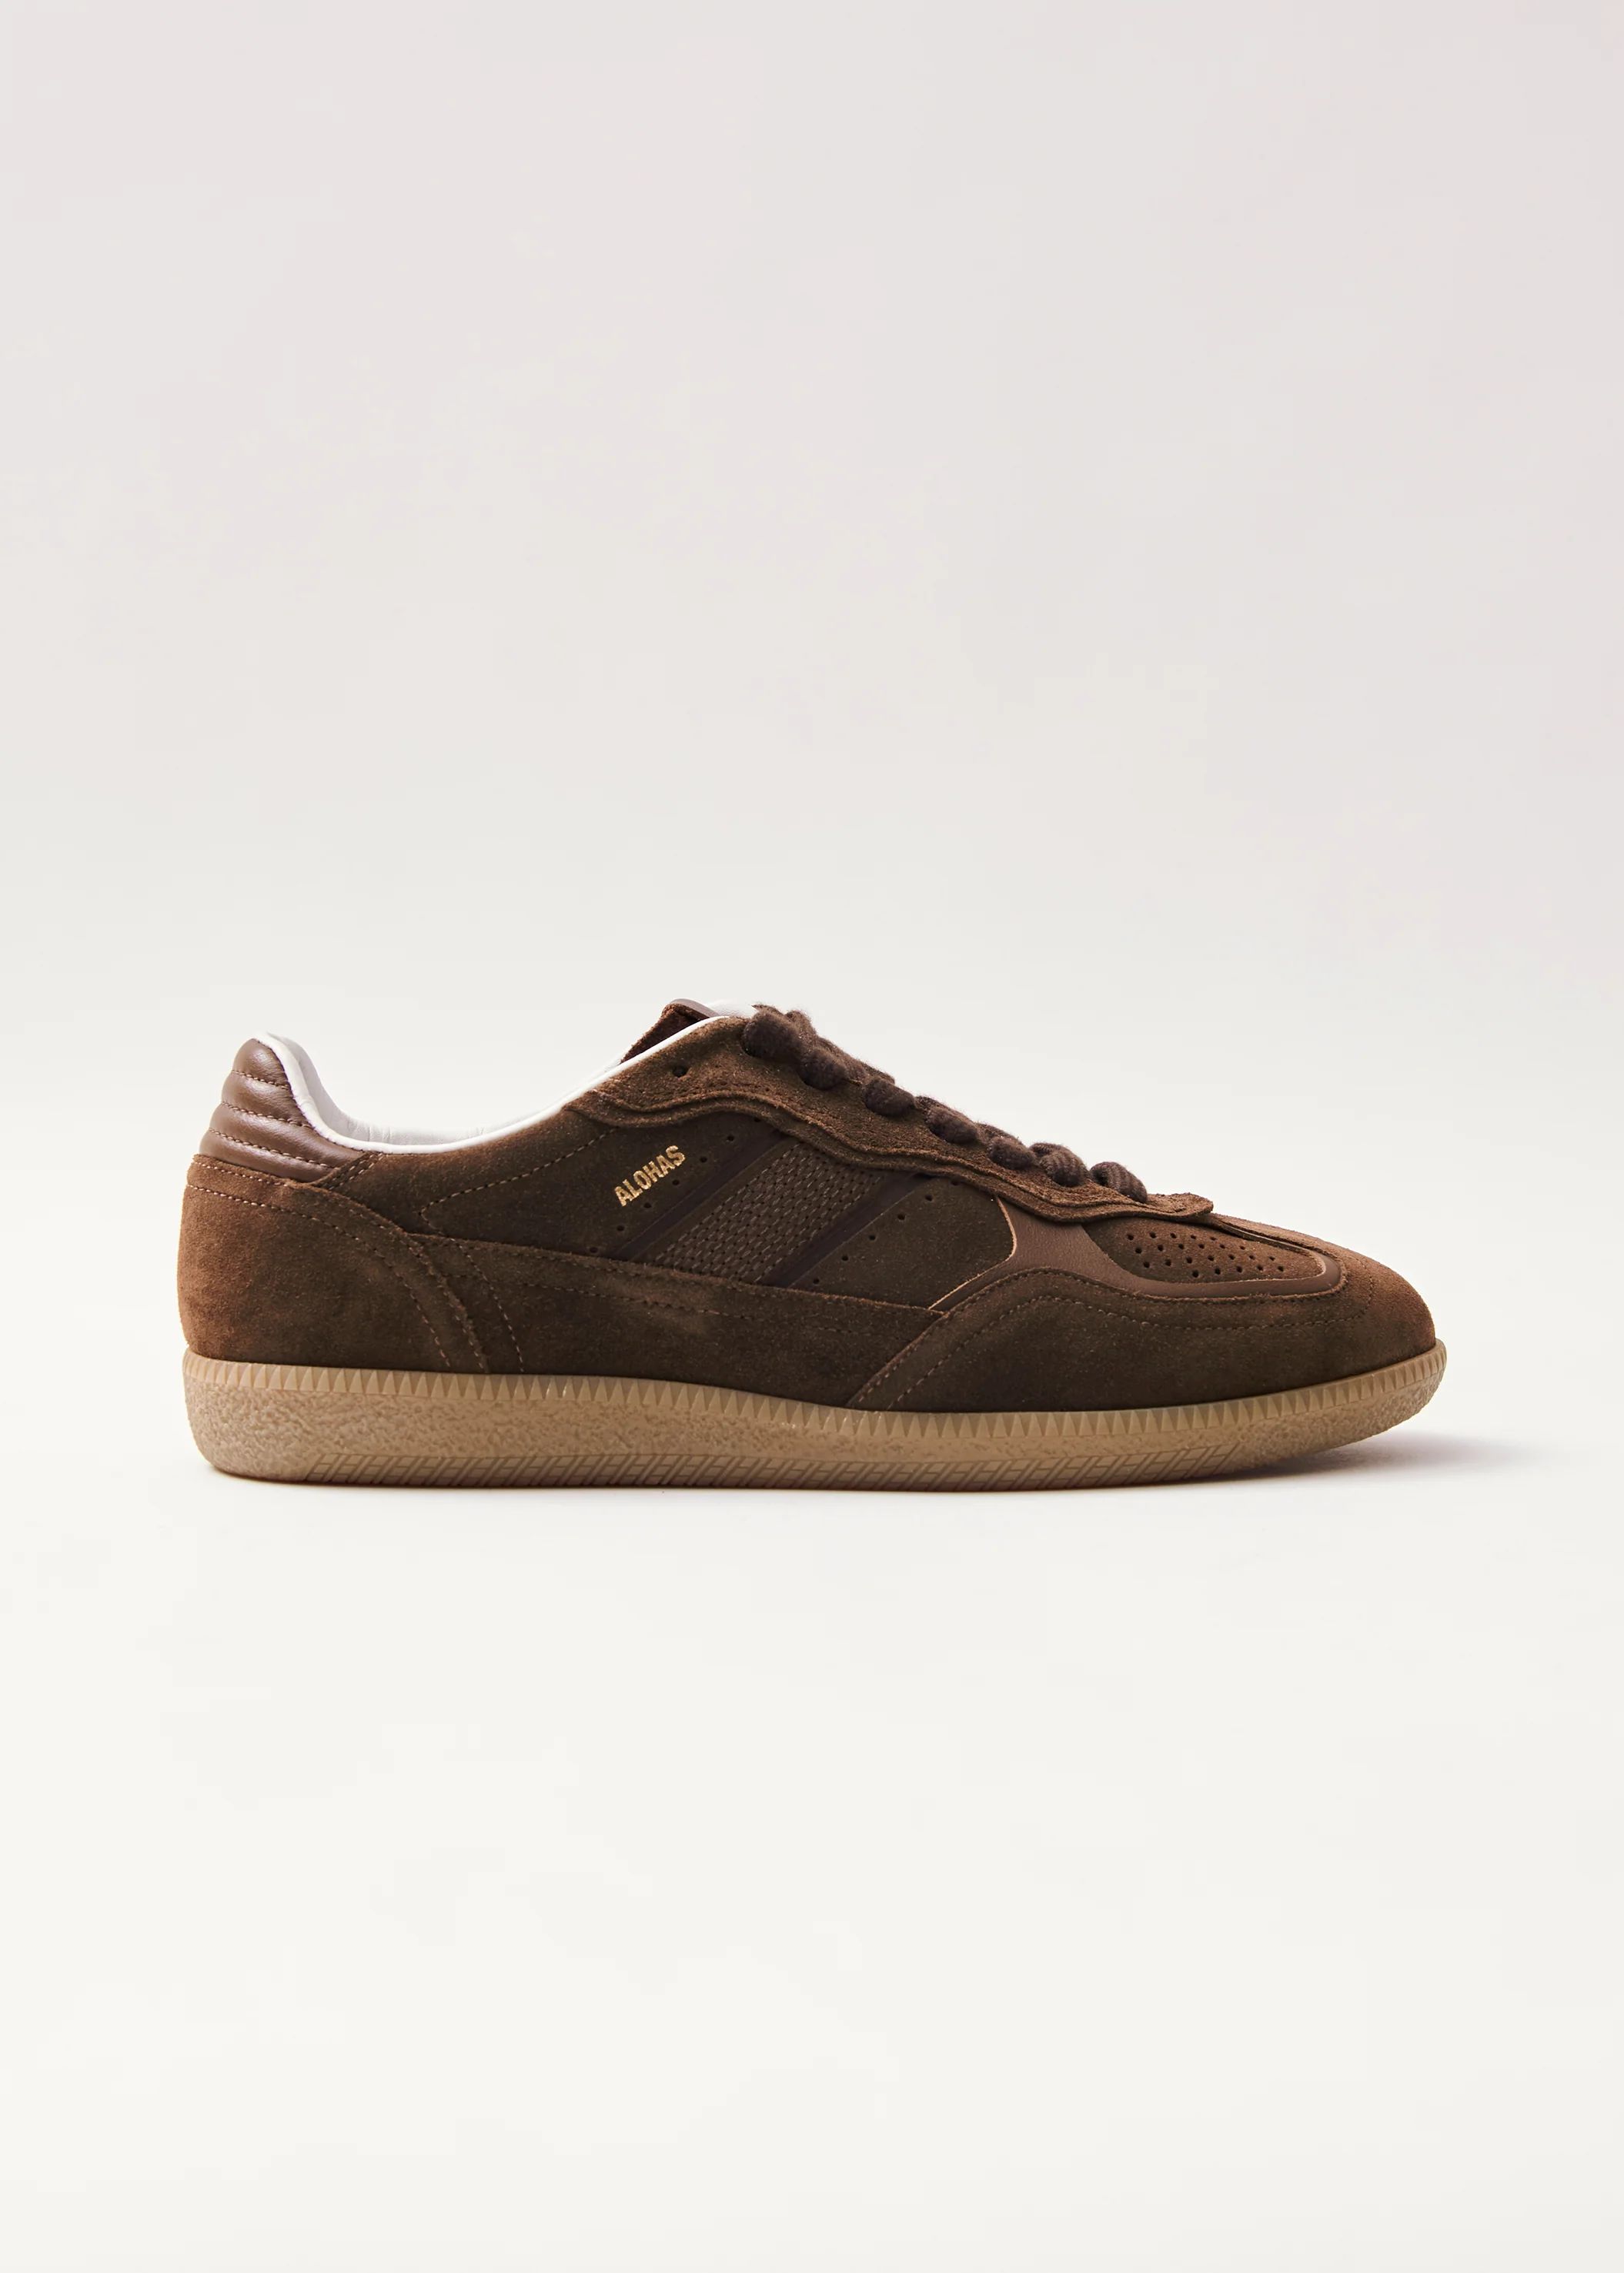 Tb.490 Rife Chocolate Brown Leather Sneakers | ALOHAS | Alohas US